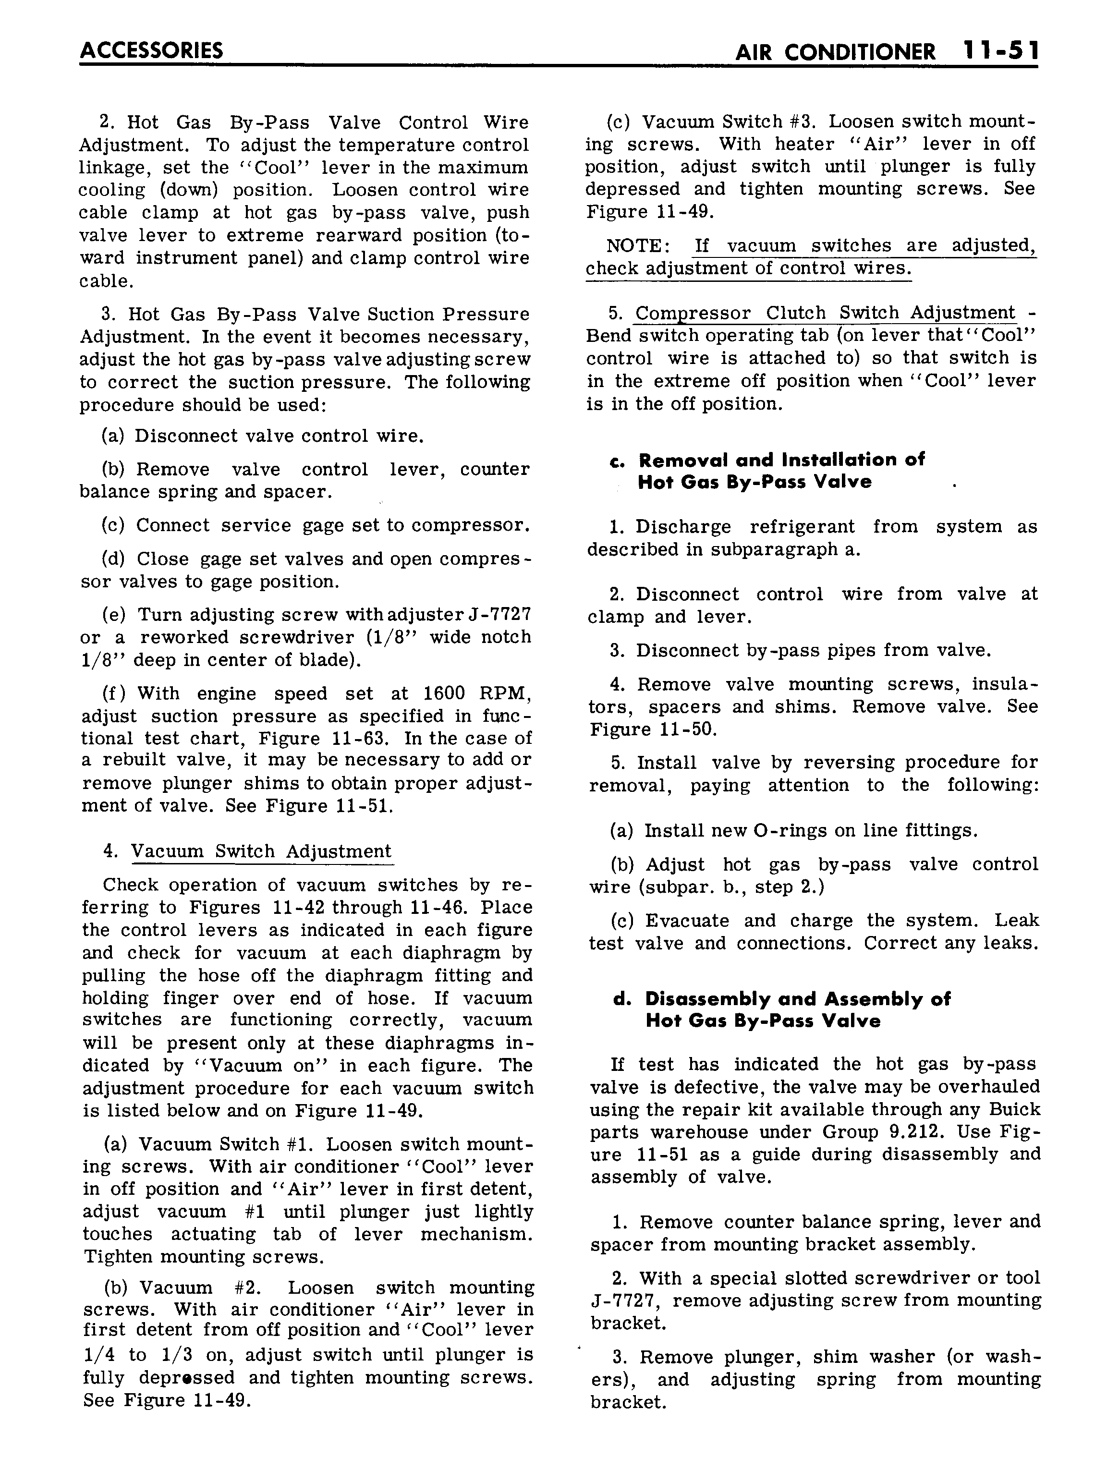 n_11 1961 Buick Shop Manual - Accessories-051-051.jpg